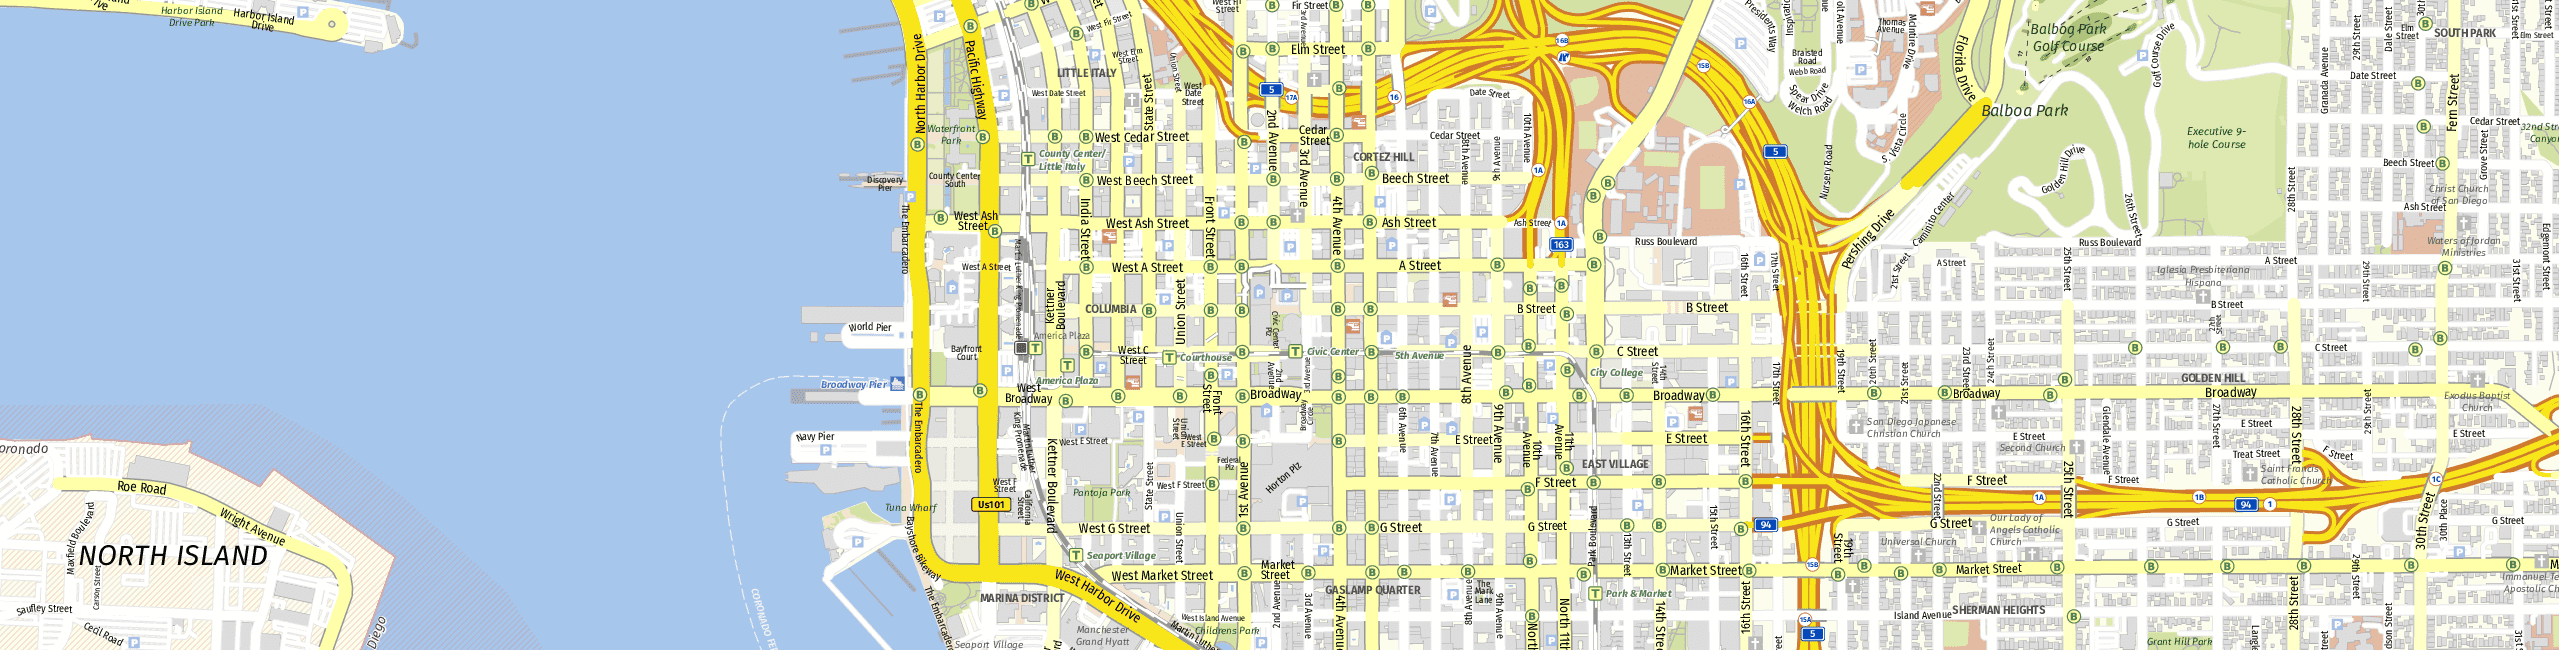 Stadtplan San Diego zum Downloaden.